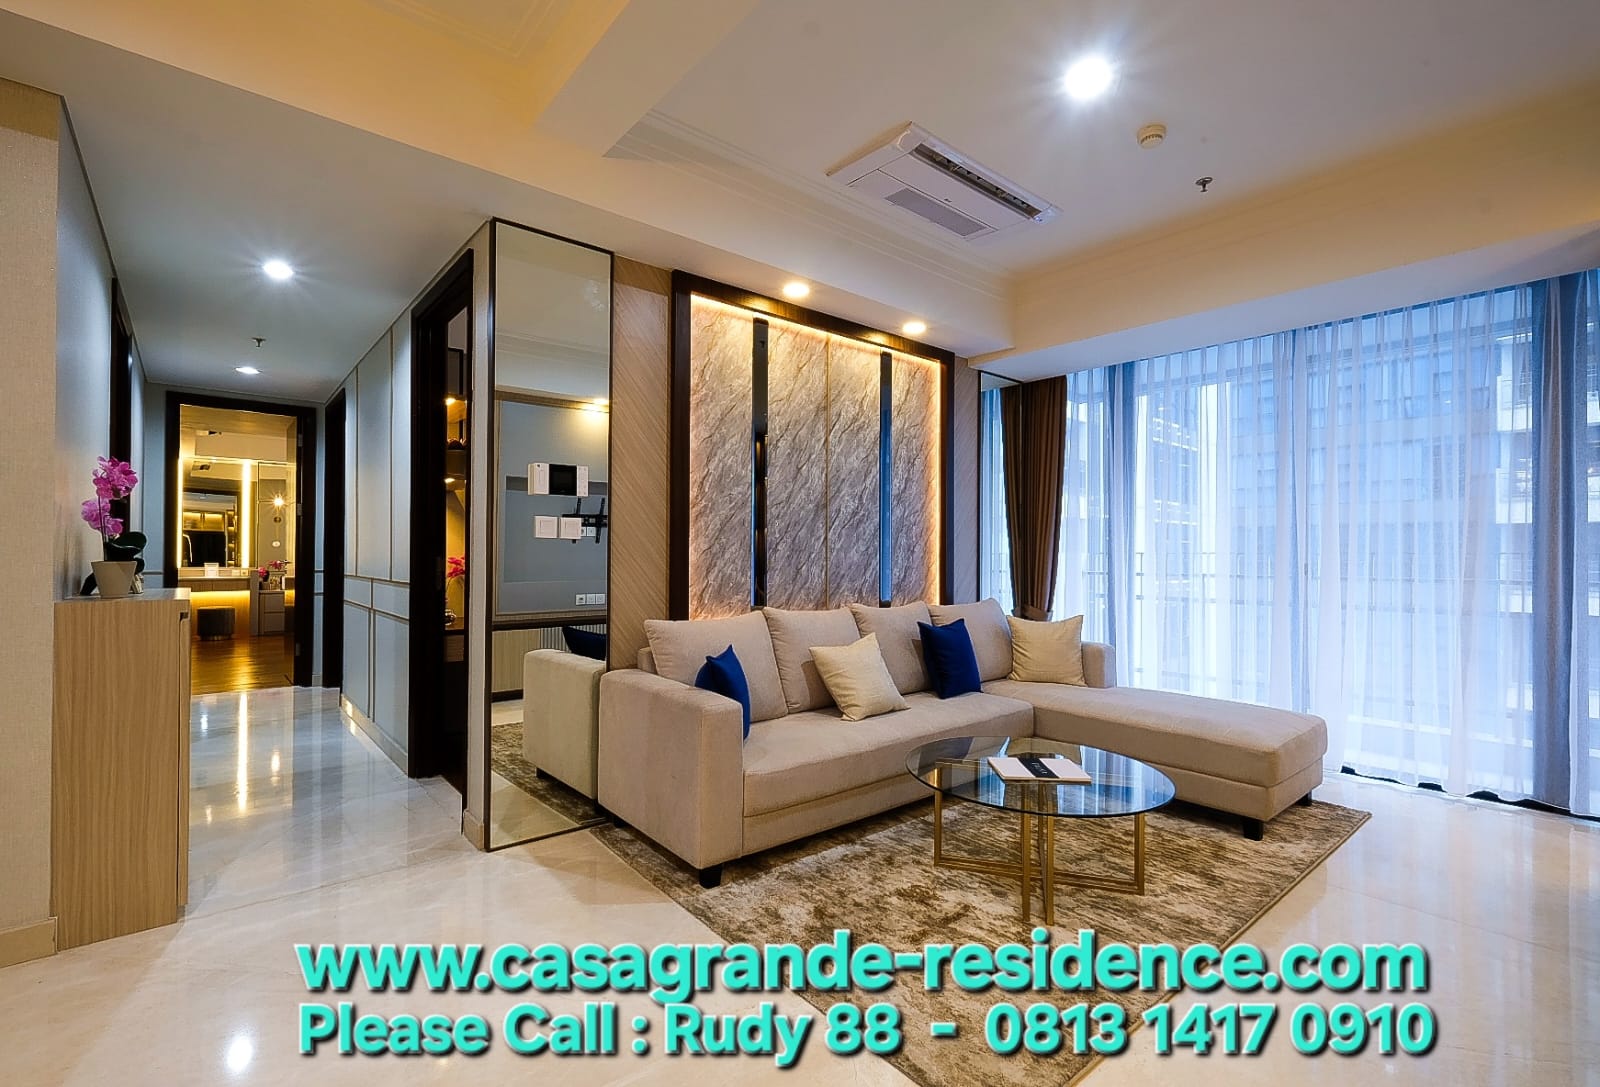 Jual Apartemen Casa Grande Residence Tower Angelo Lantai 37 Unit 09 Luas 129 m2 Rp.5,5 Milyar Fully Furnished